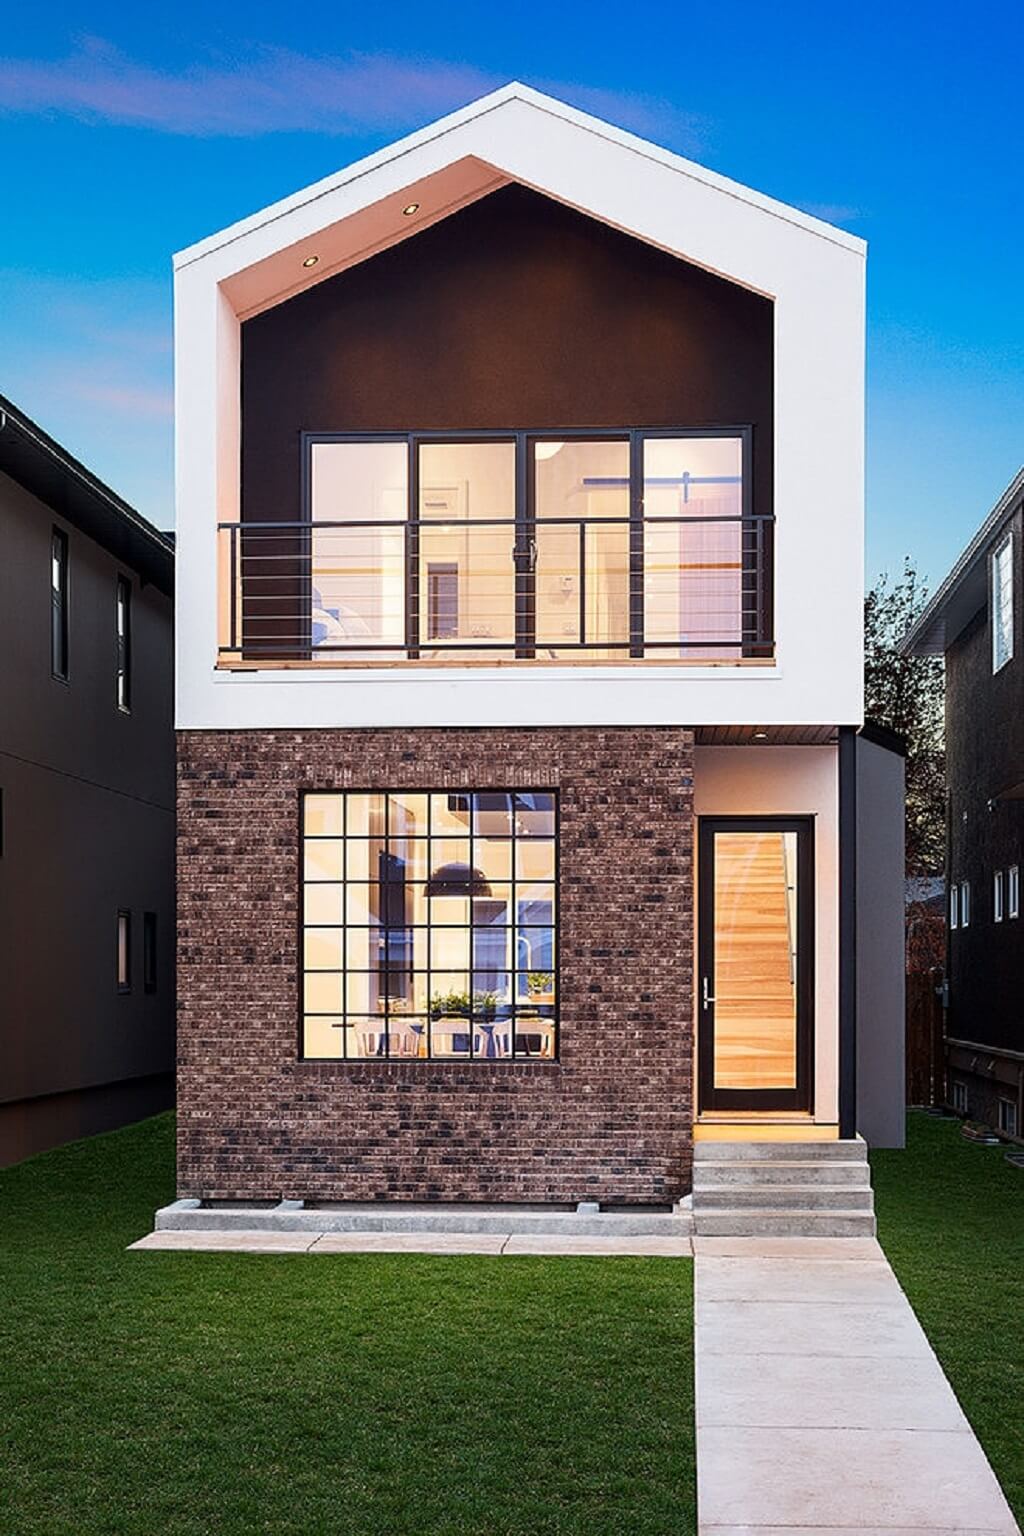 desain fasad rumah yang sederhana